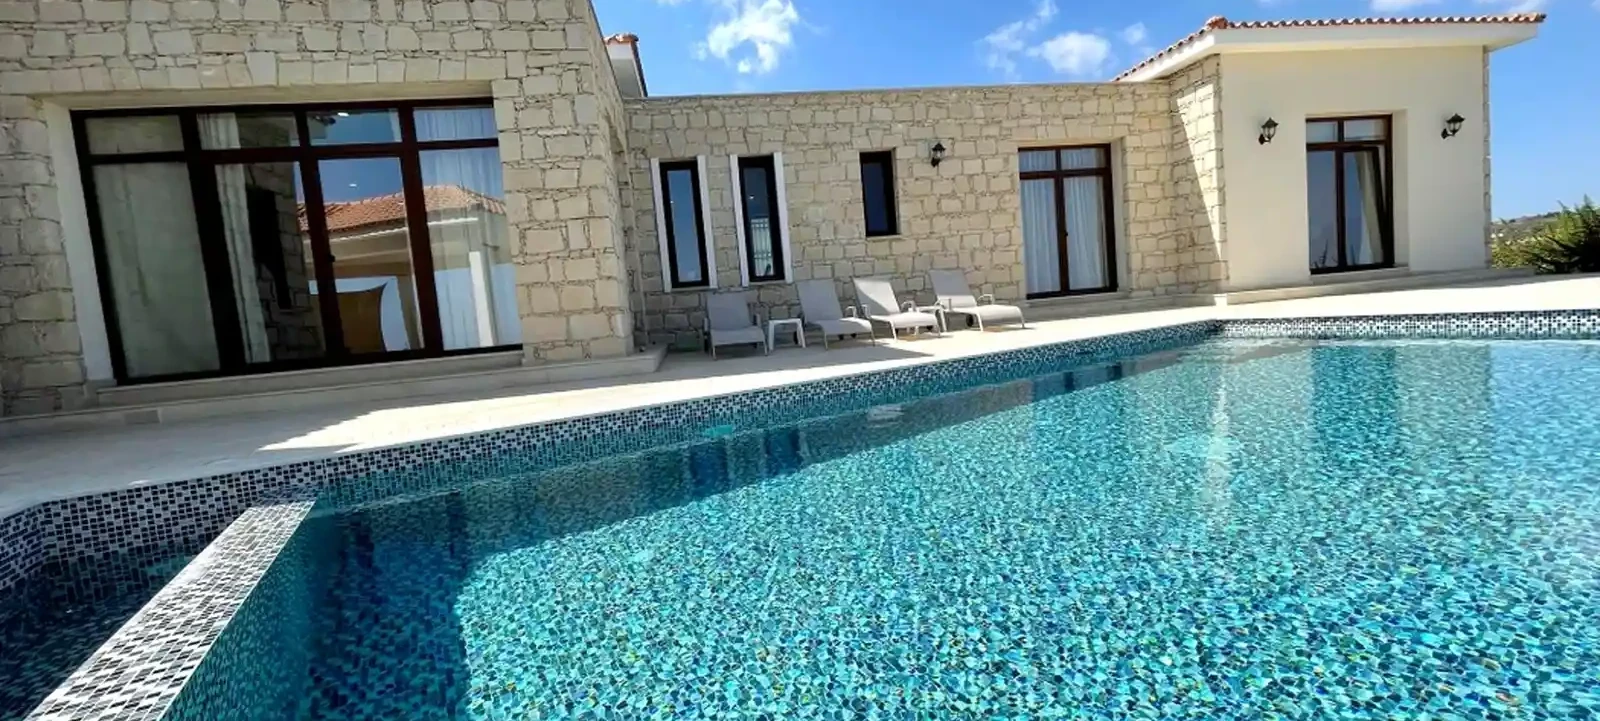 4-bedroom villa to rent €4.200, image 1